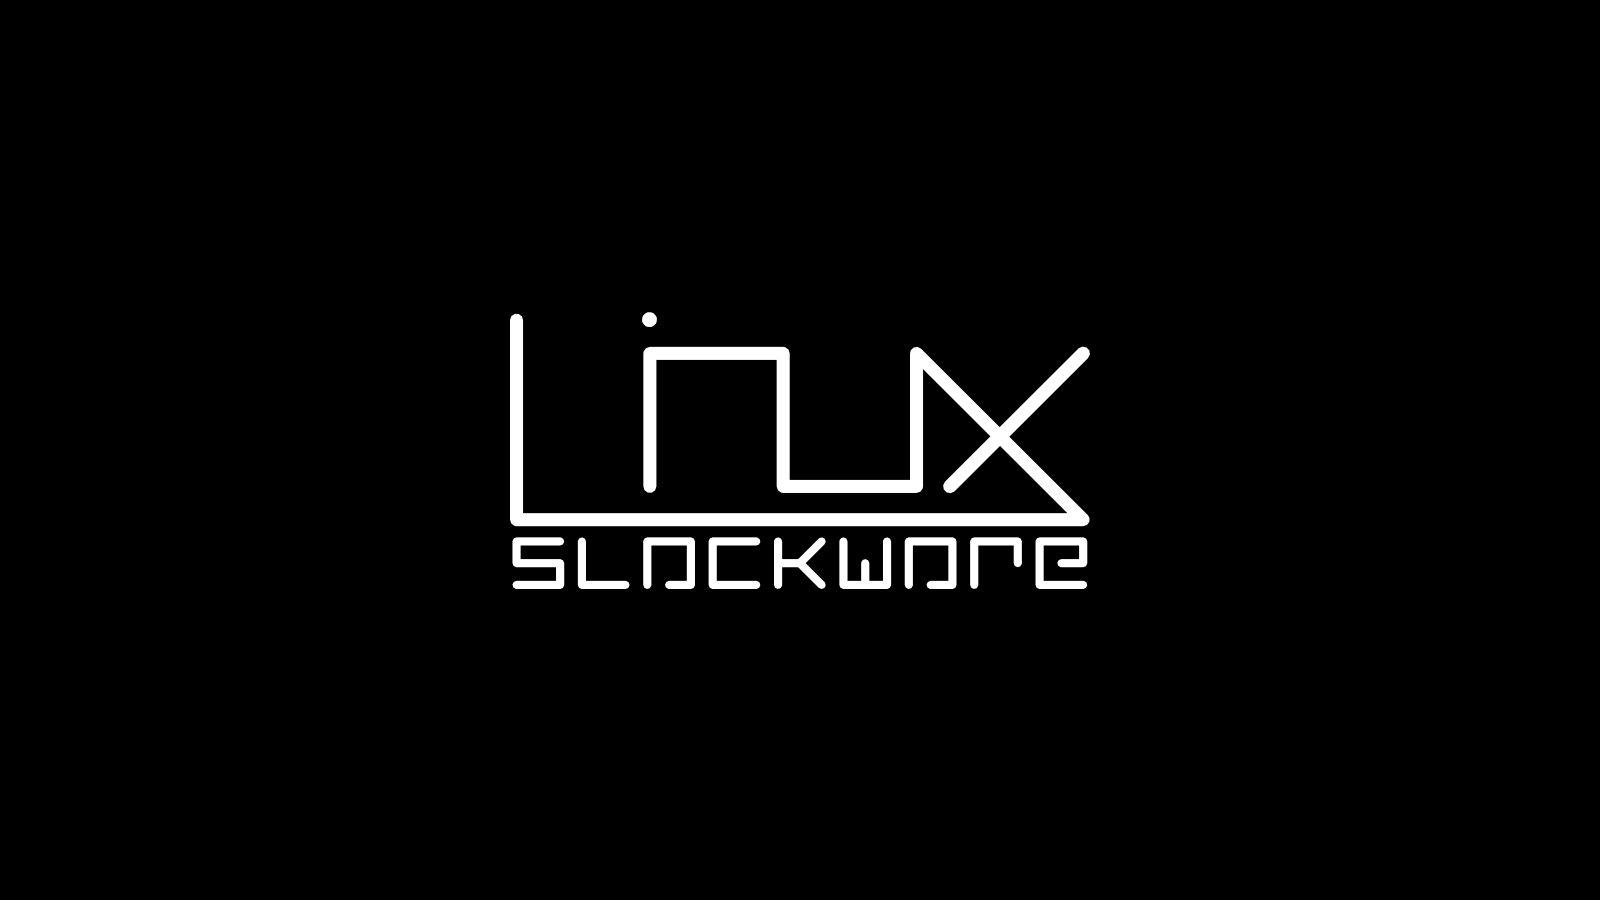 Slackware Linux Wallpaper. PicsWallpaper